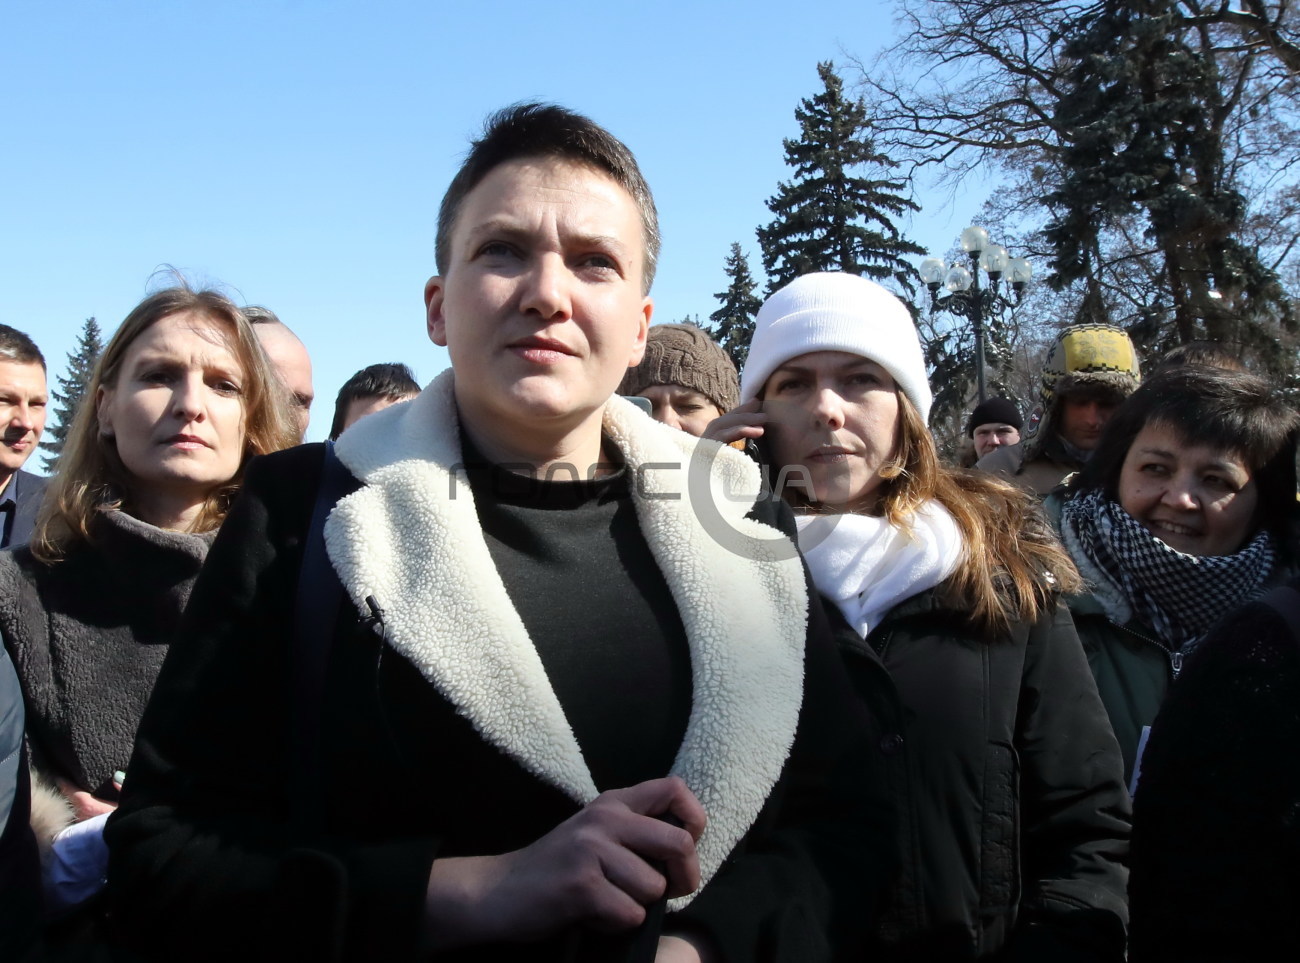 Возле ВР собрались сторонники и противники Савченко